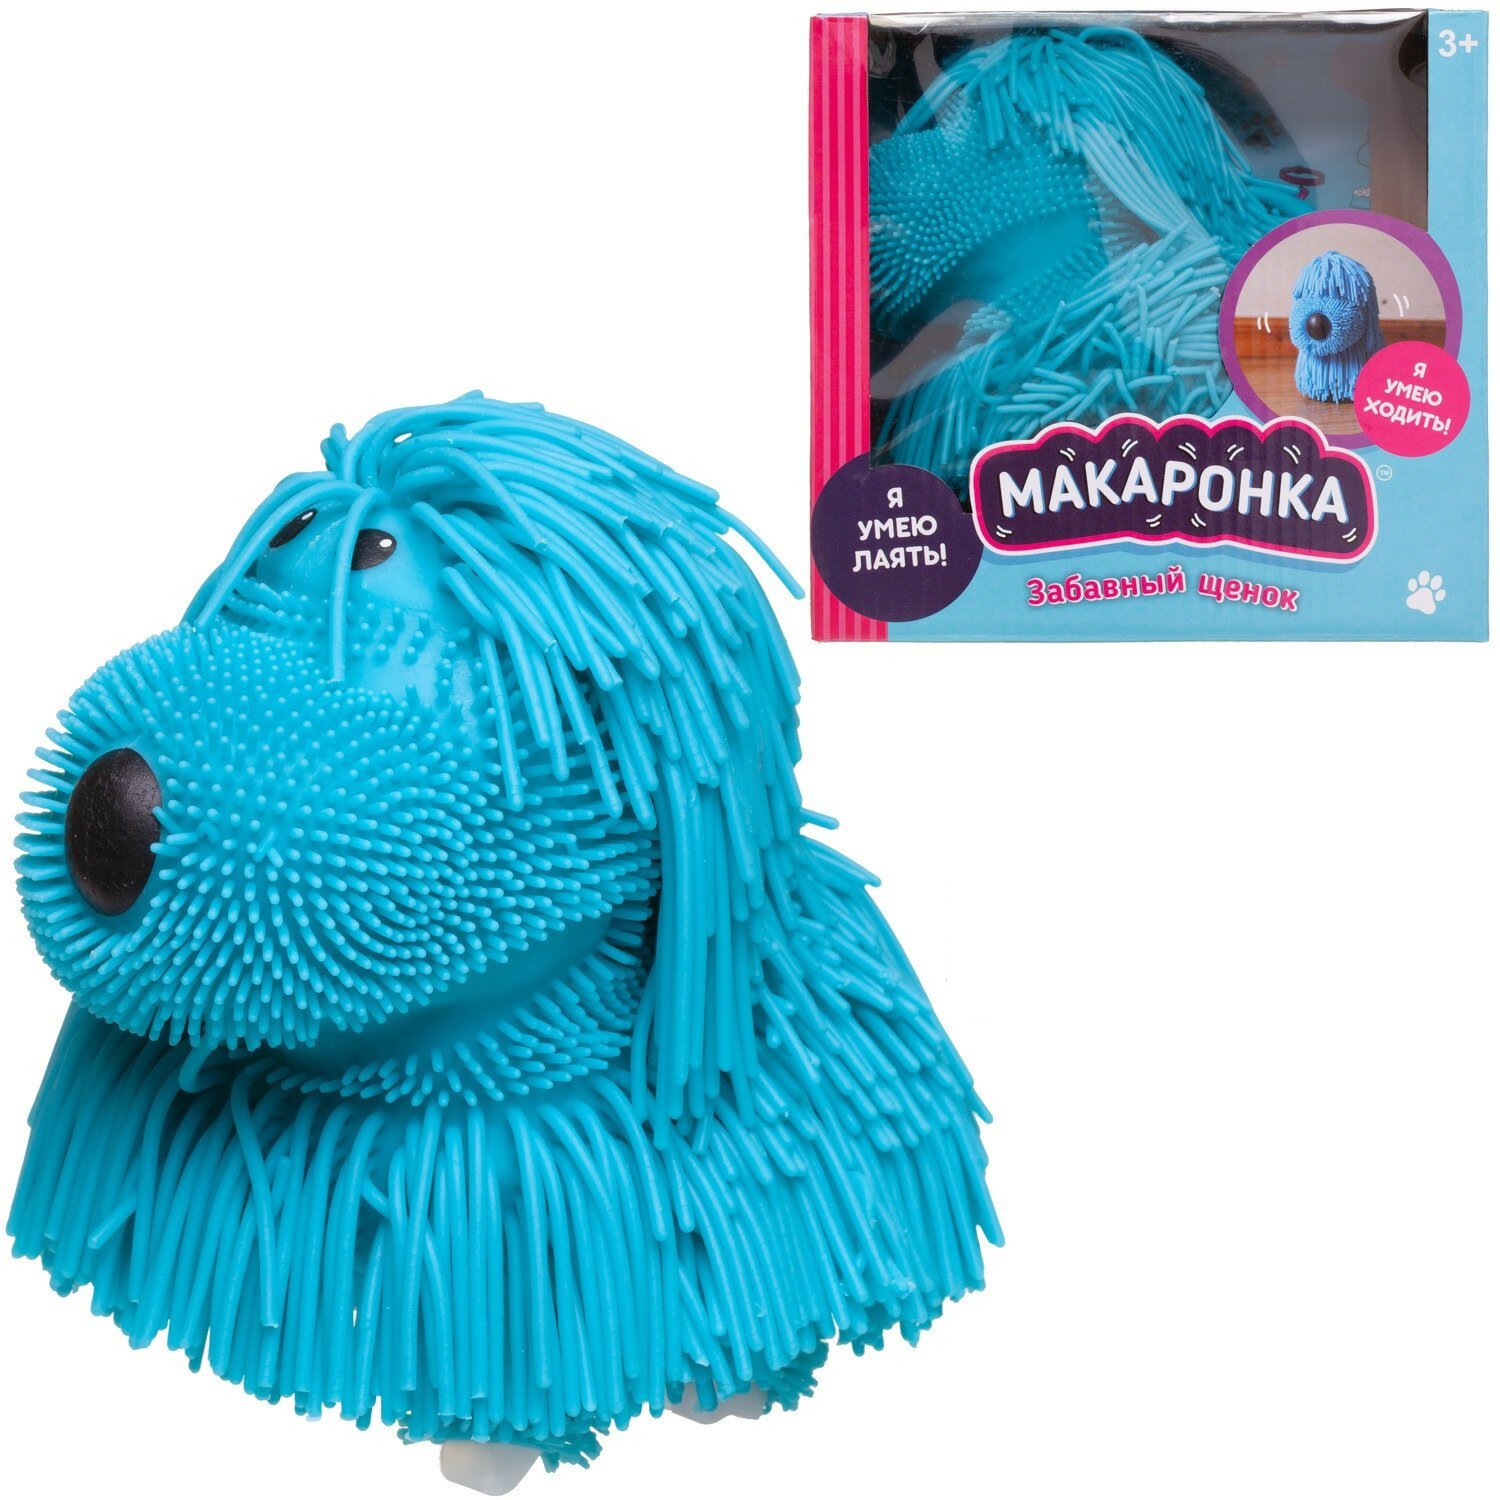 Интерактивная игрушка ABtoys "Макаронка", голубая собака, ходит, музыкальные эффекты